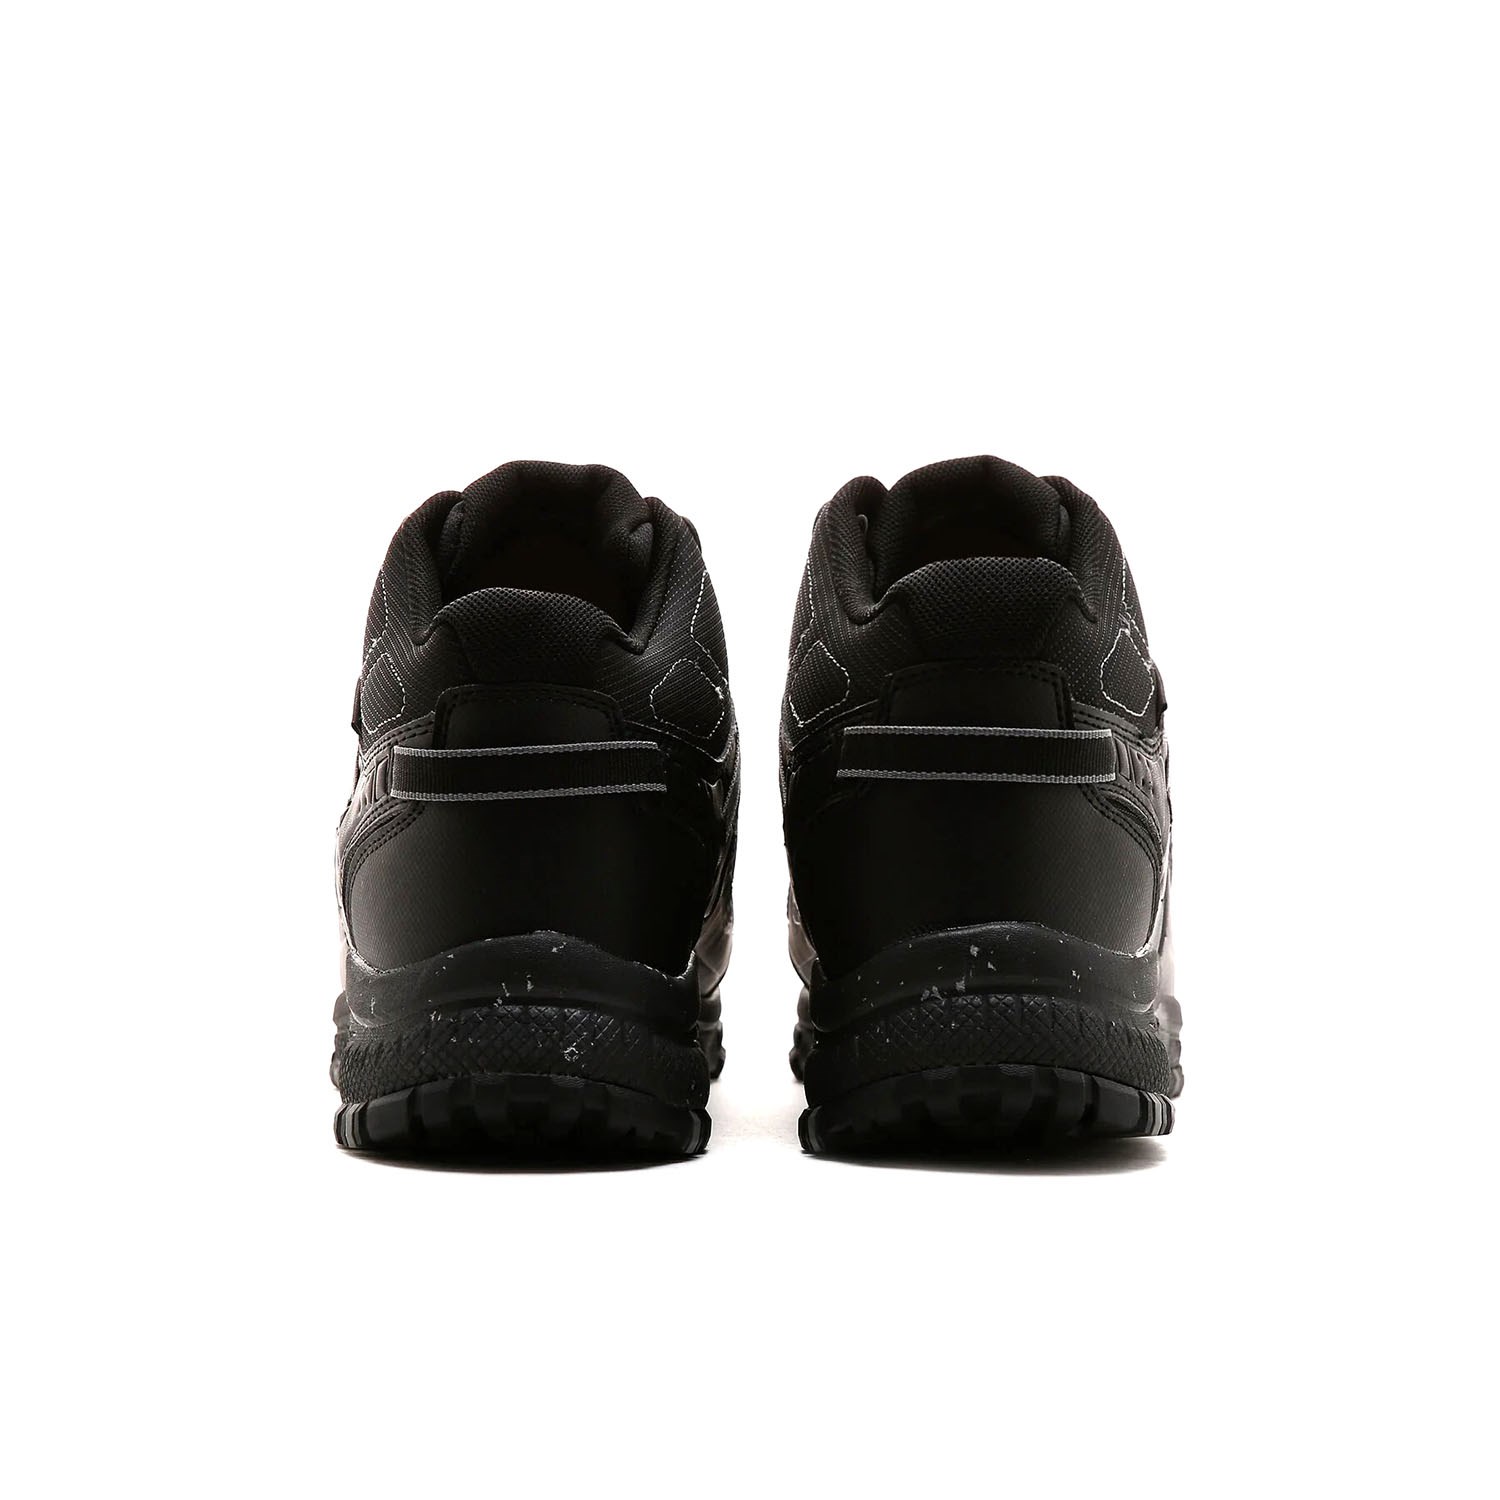 Skechers Hillcrest-Cross Shift Erkek Günlük Spor Ayakkabı Siyah